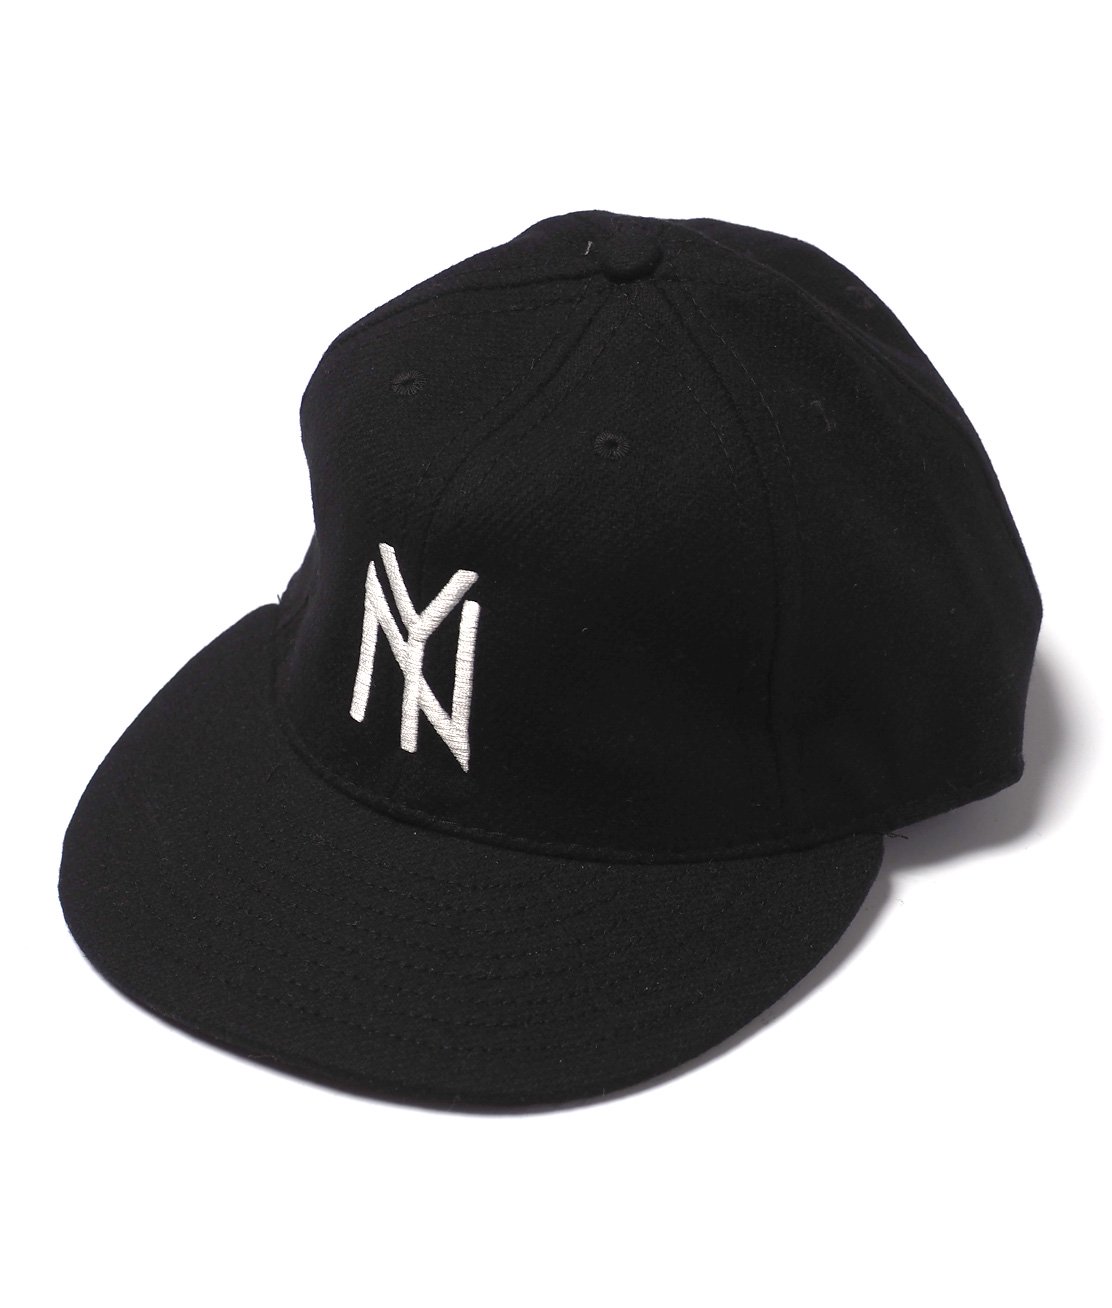 COOPERSTOWN】NEW YORK BLACK YANKEES 1951 - BLACK キャップ 帽子 USA